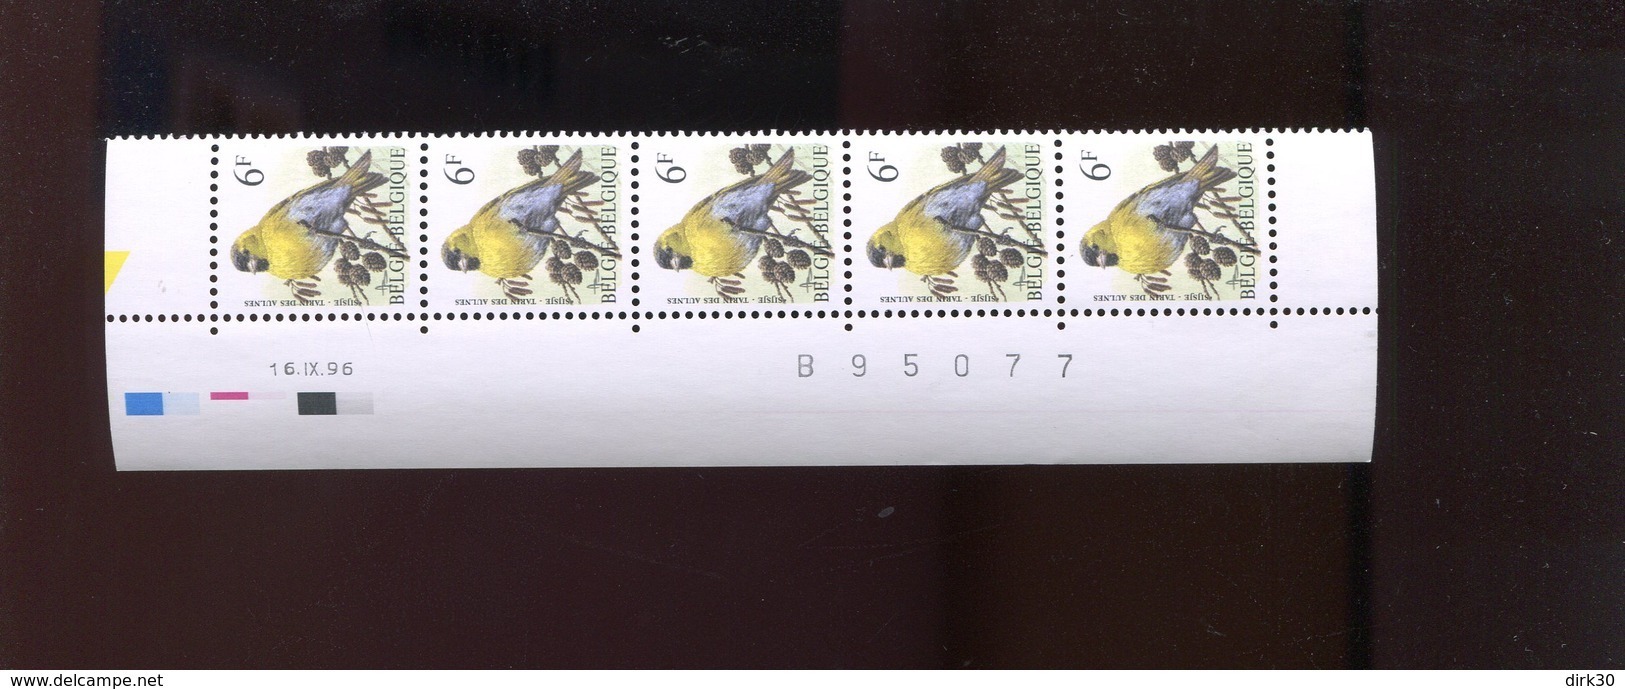 Belgie Buzin Vogels Birds 2665 6Fr Bande Datée Datumstrook Onpaar 16/9/1996 Velnr 80455 - 1985-.. Oiseaux (Buzin)